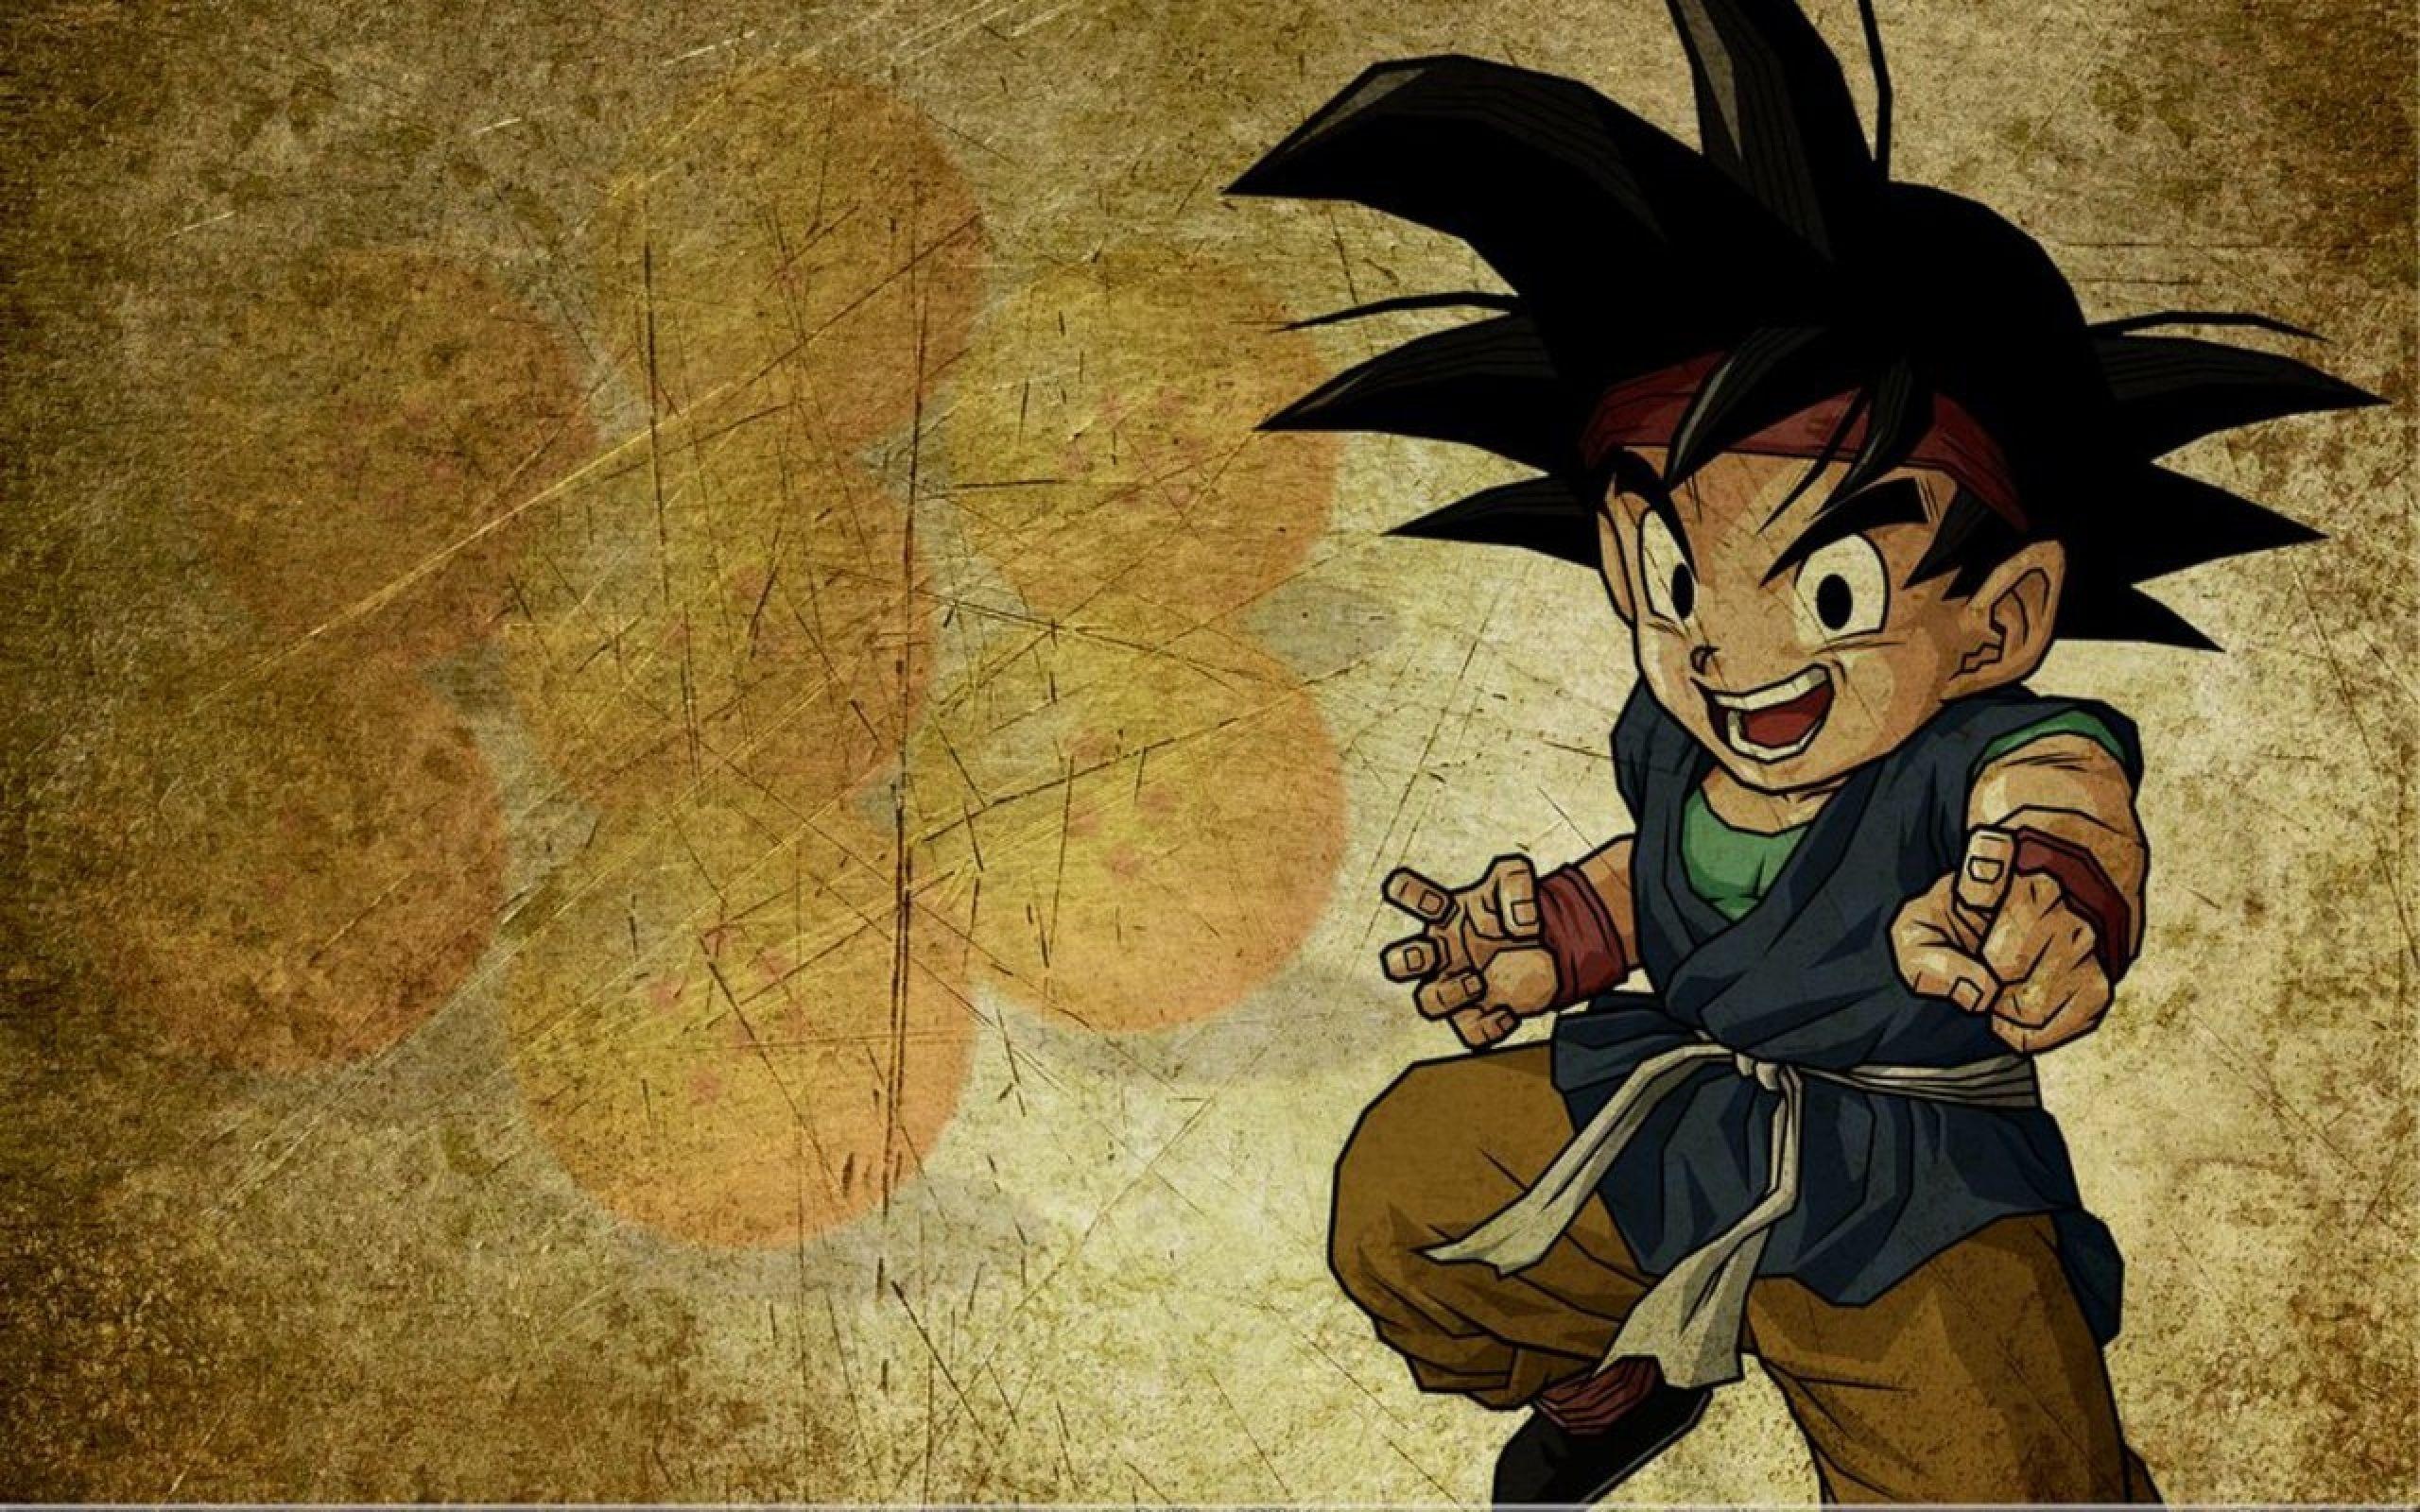 Dragon Ball Z Goku Small Wallpaper. The Best Cartoon Character